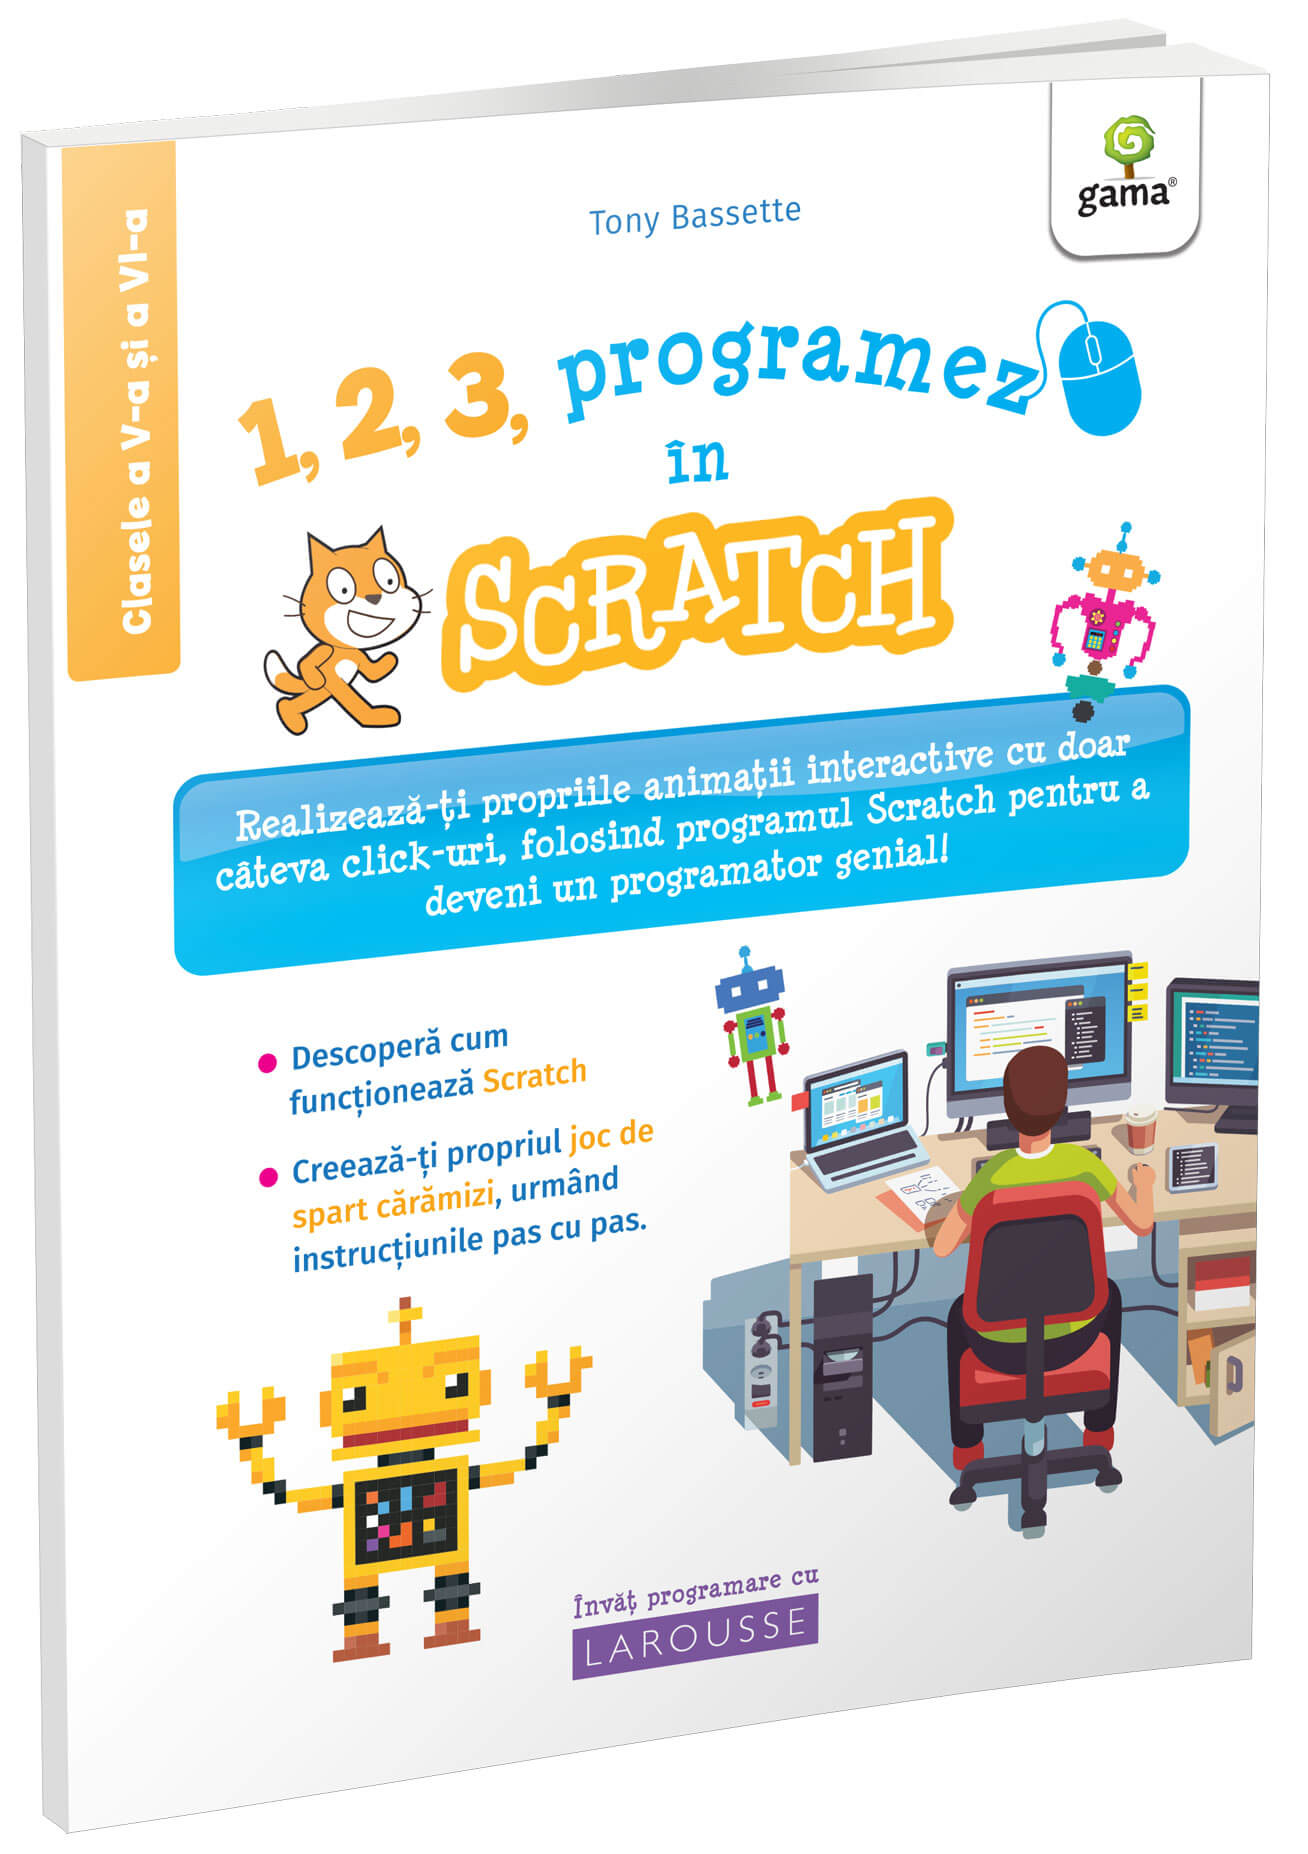 1, 2, 3, programez in Scratch